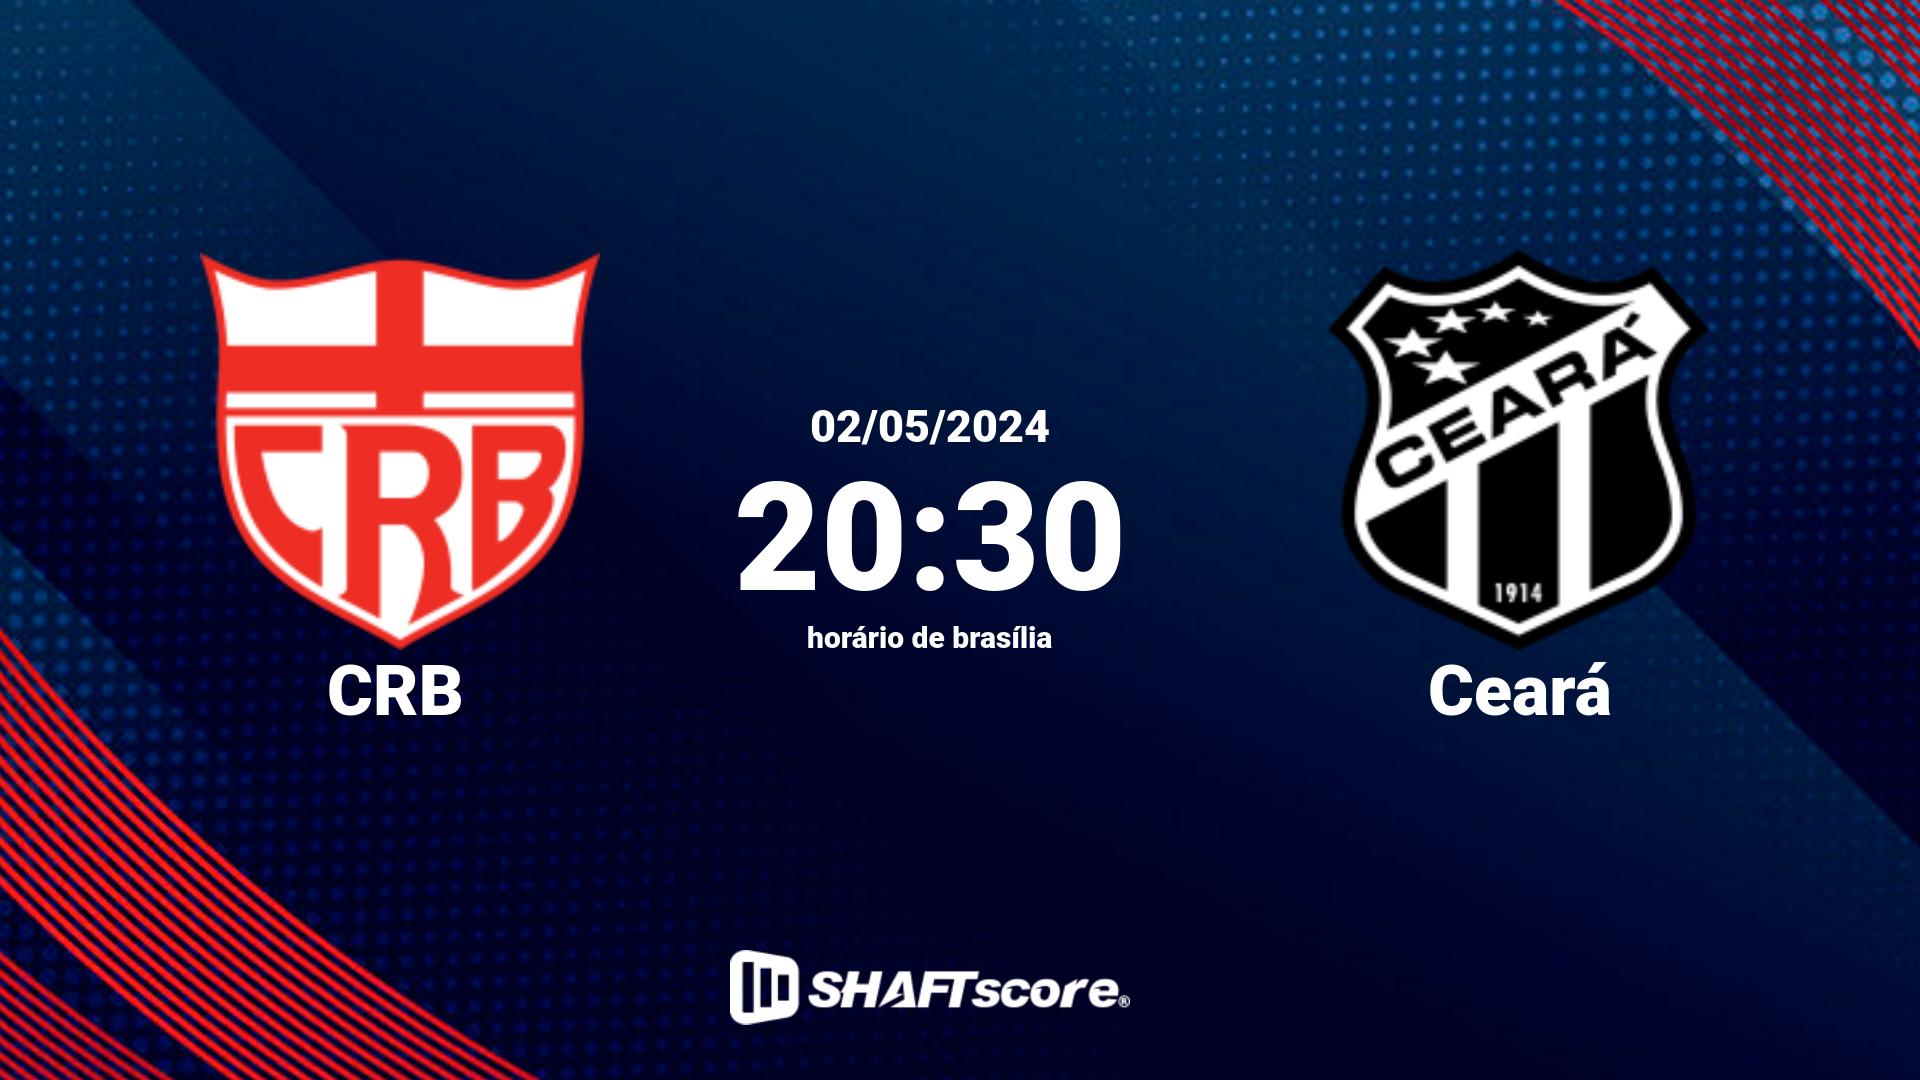 Estatísticas do jogo CRB vs Ceará 02.05 20:30